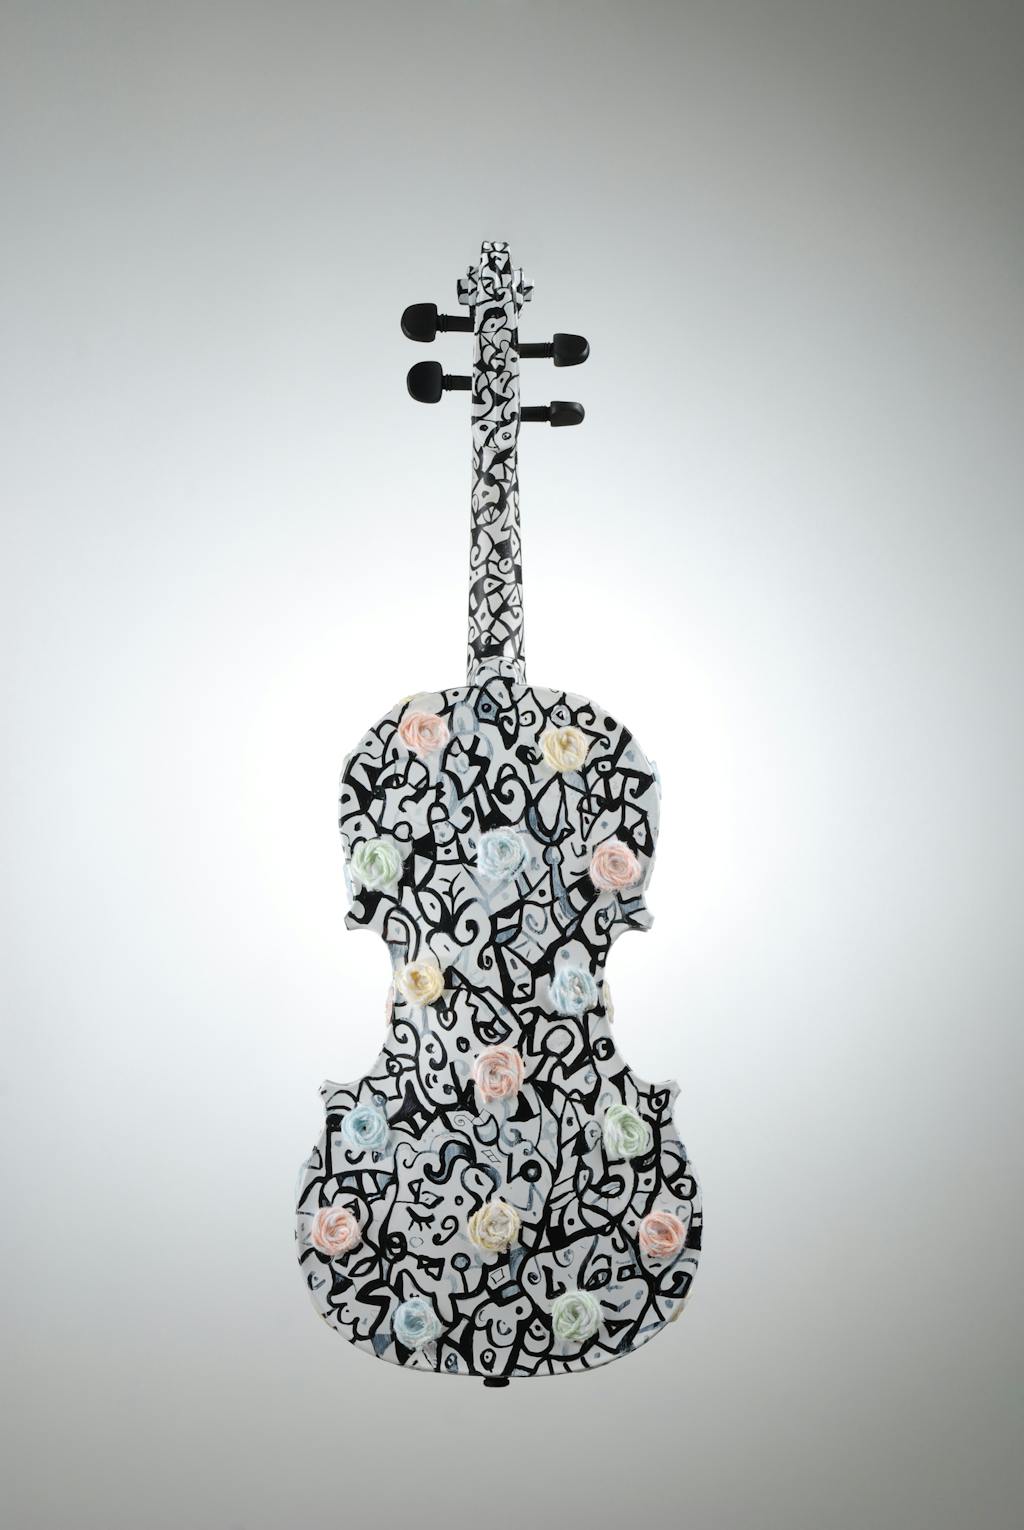 Violin "Pastorale", painted by Elena Birkenwald in 2008